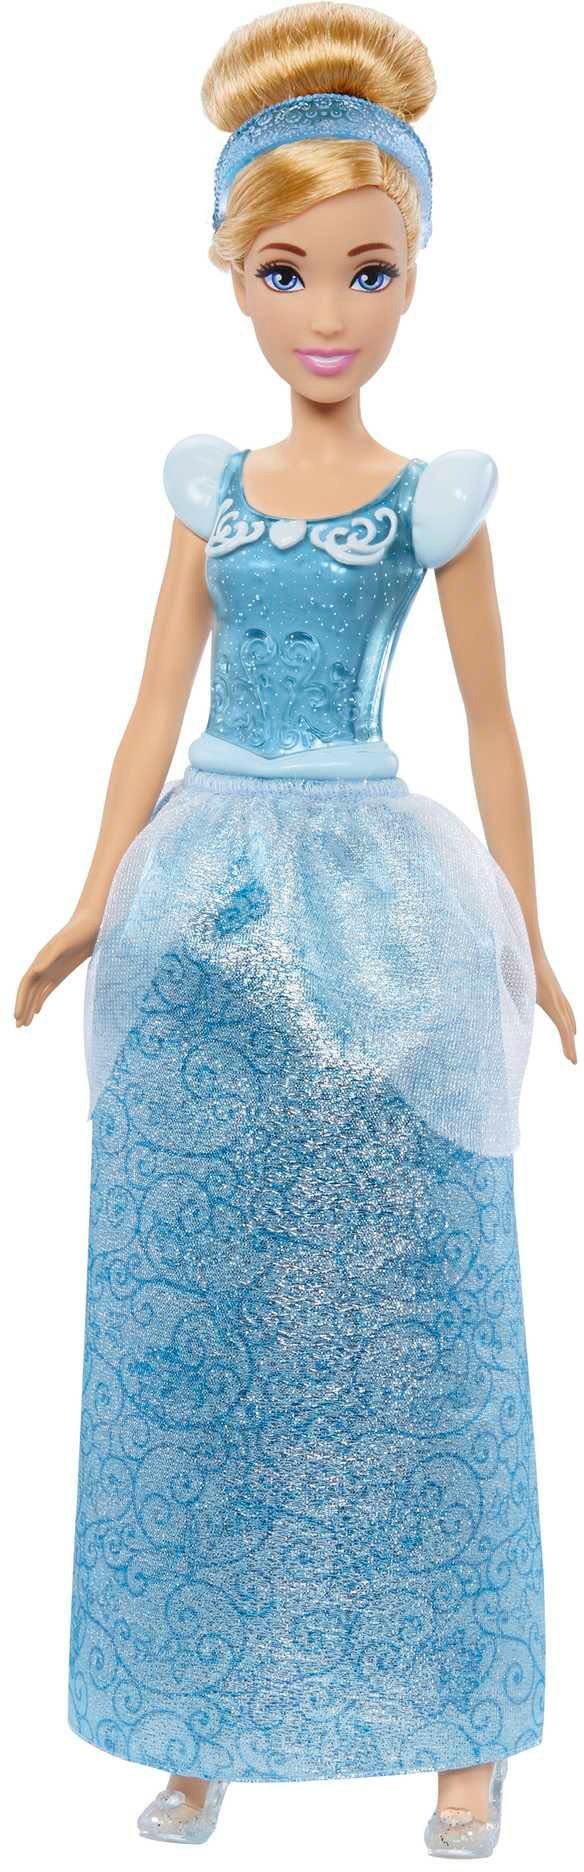 Modepuppe »Disney Anziehpuppe Cinderella« Mattel® Anziehpuppe Disney Cinderella, Princess Modepuppe Princess